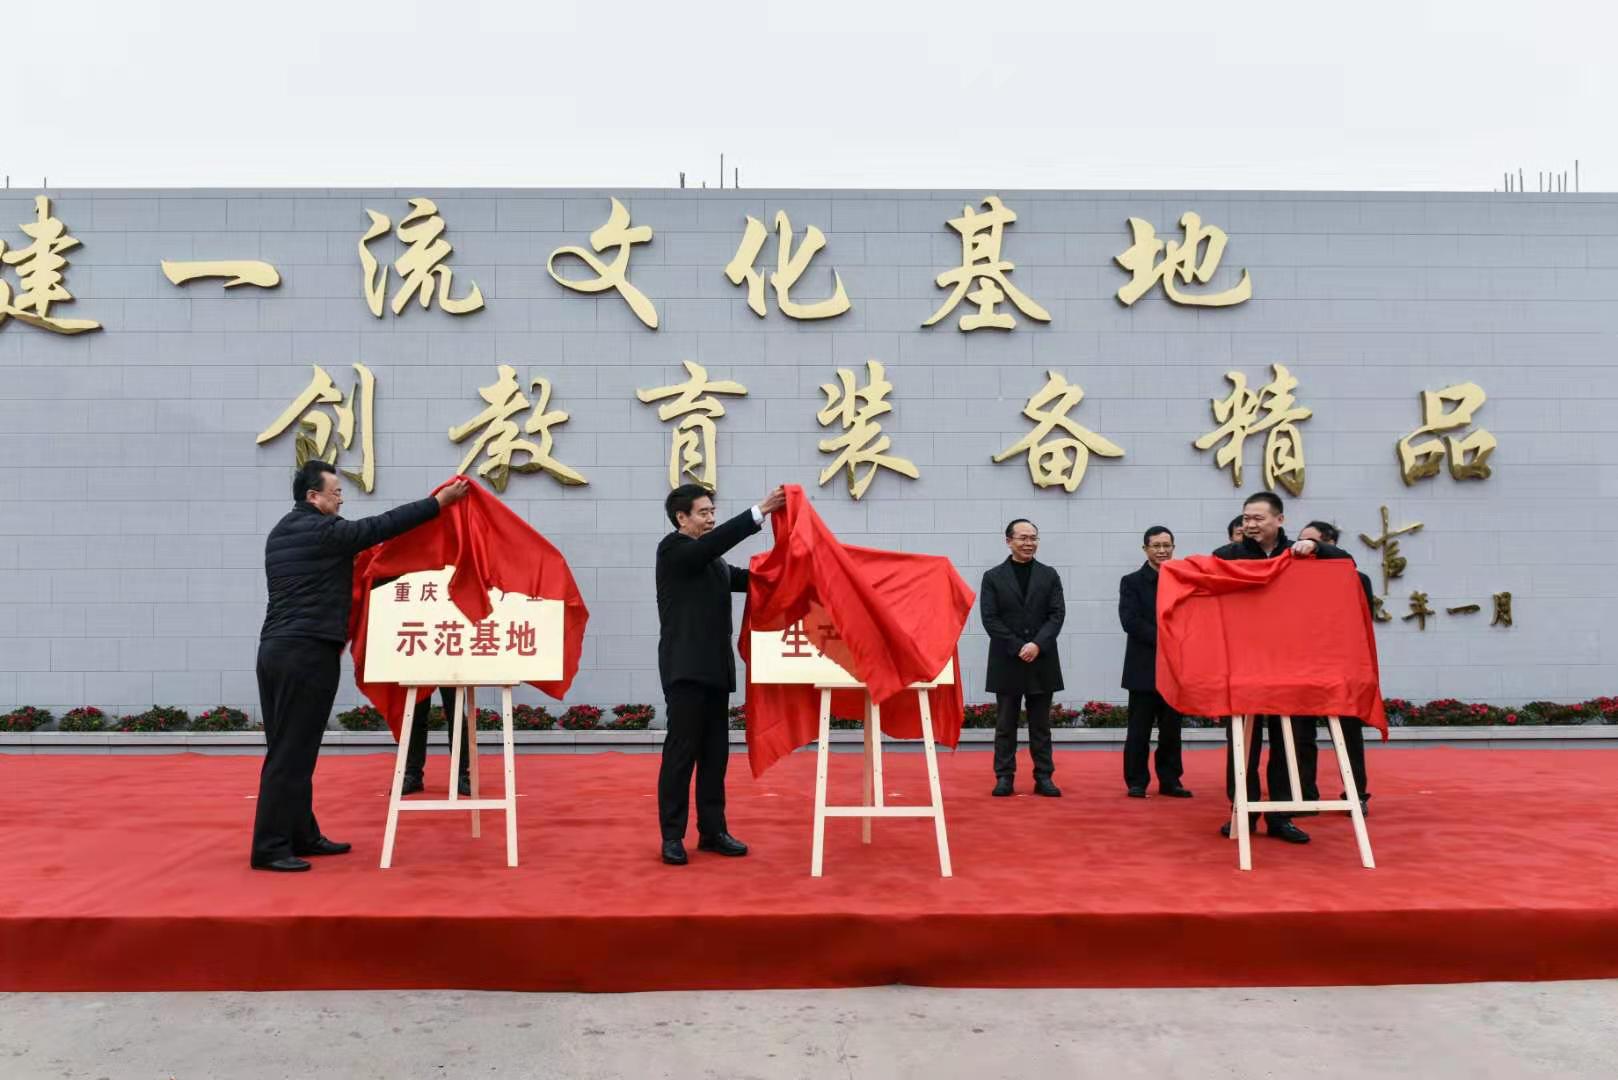 重庆斯威特钢琴有限公司 环境照片活动图片